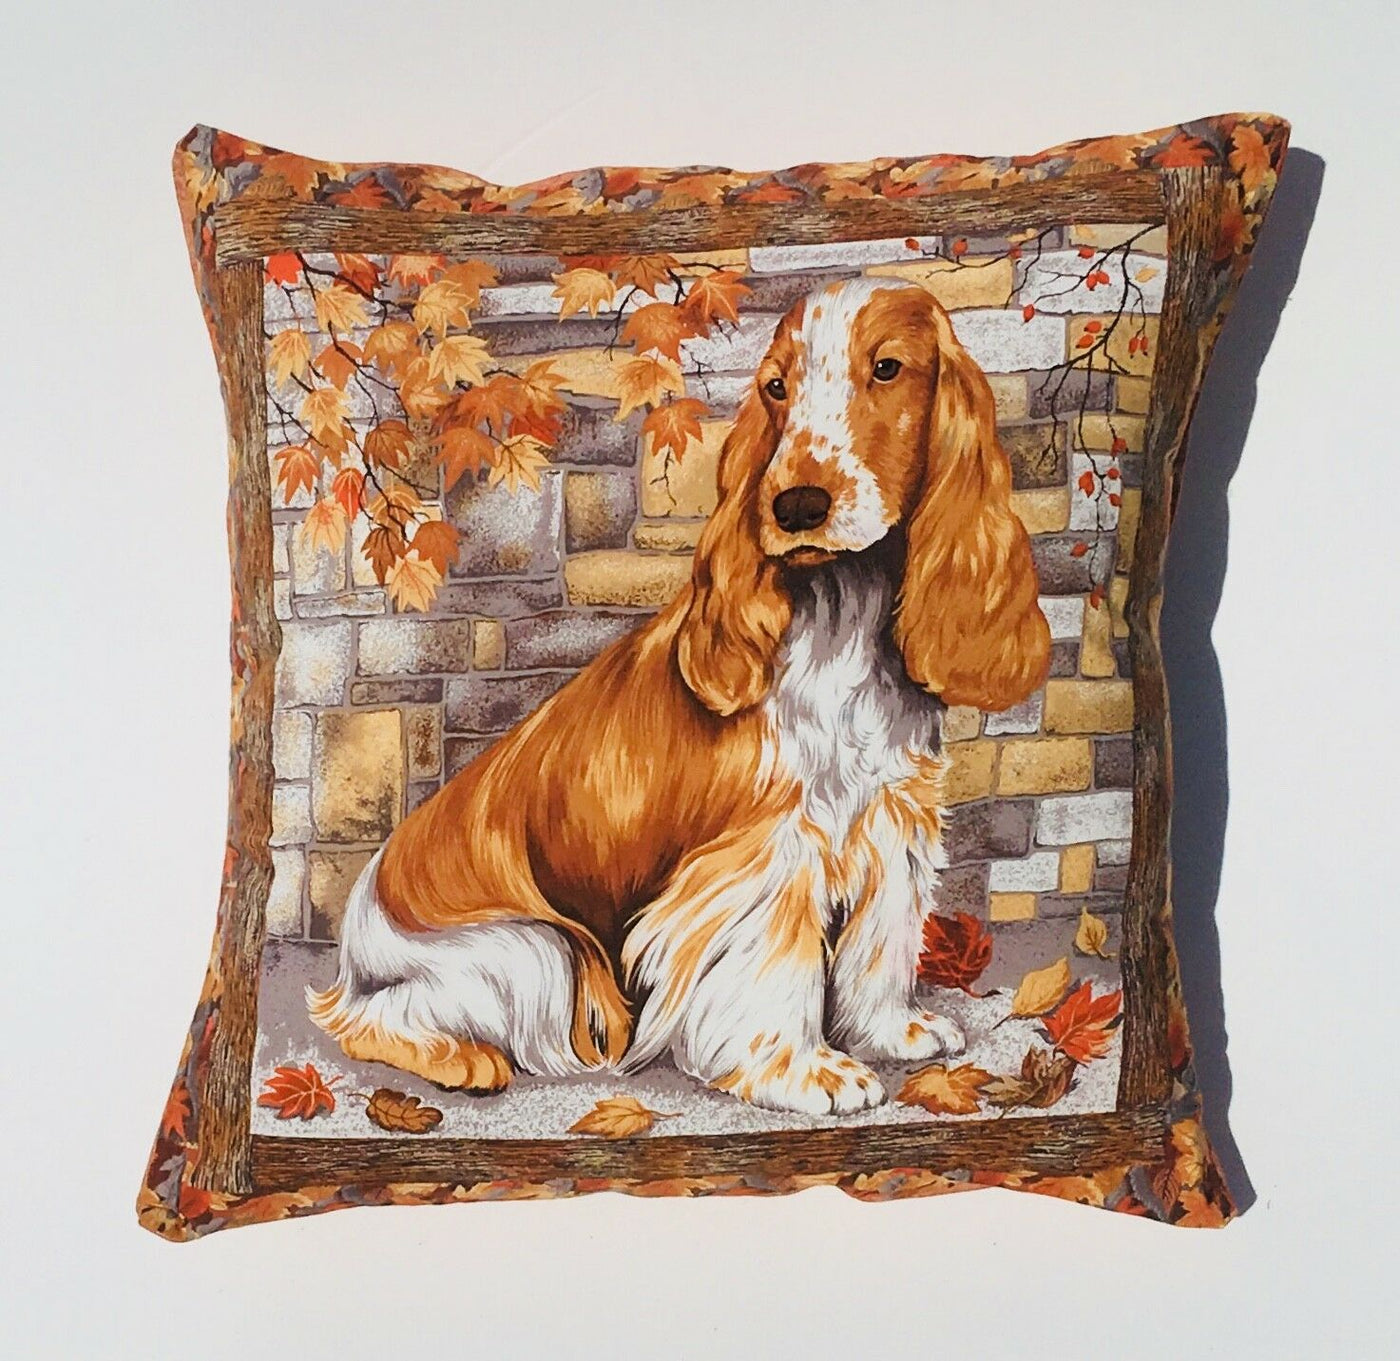 Spaniel Dog Cushion Cover Sofa Decorative Pillow Case fits 18" x 18" cushion